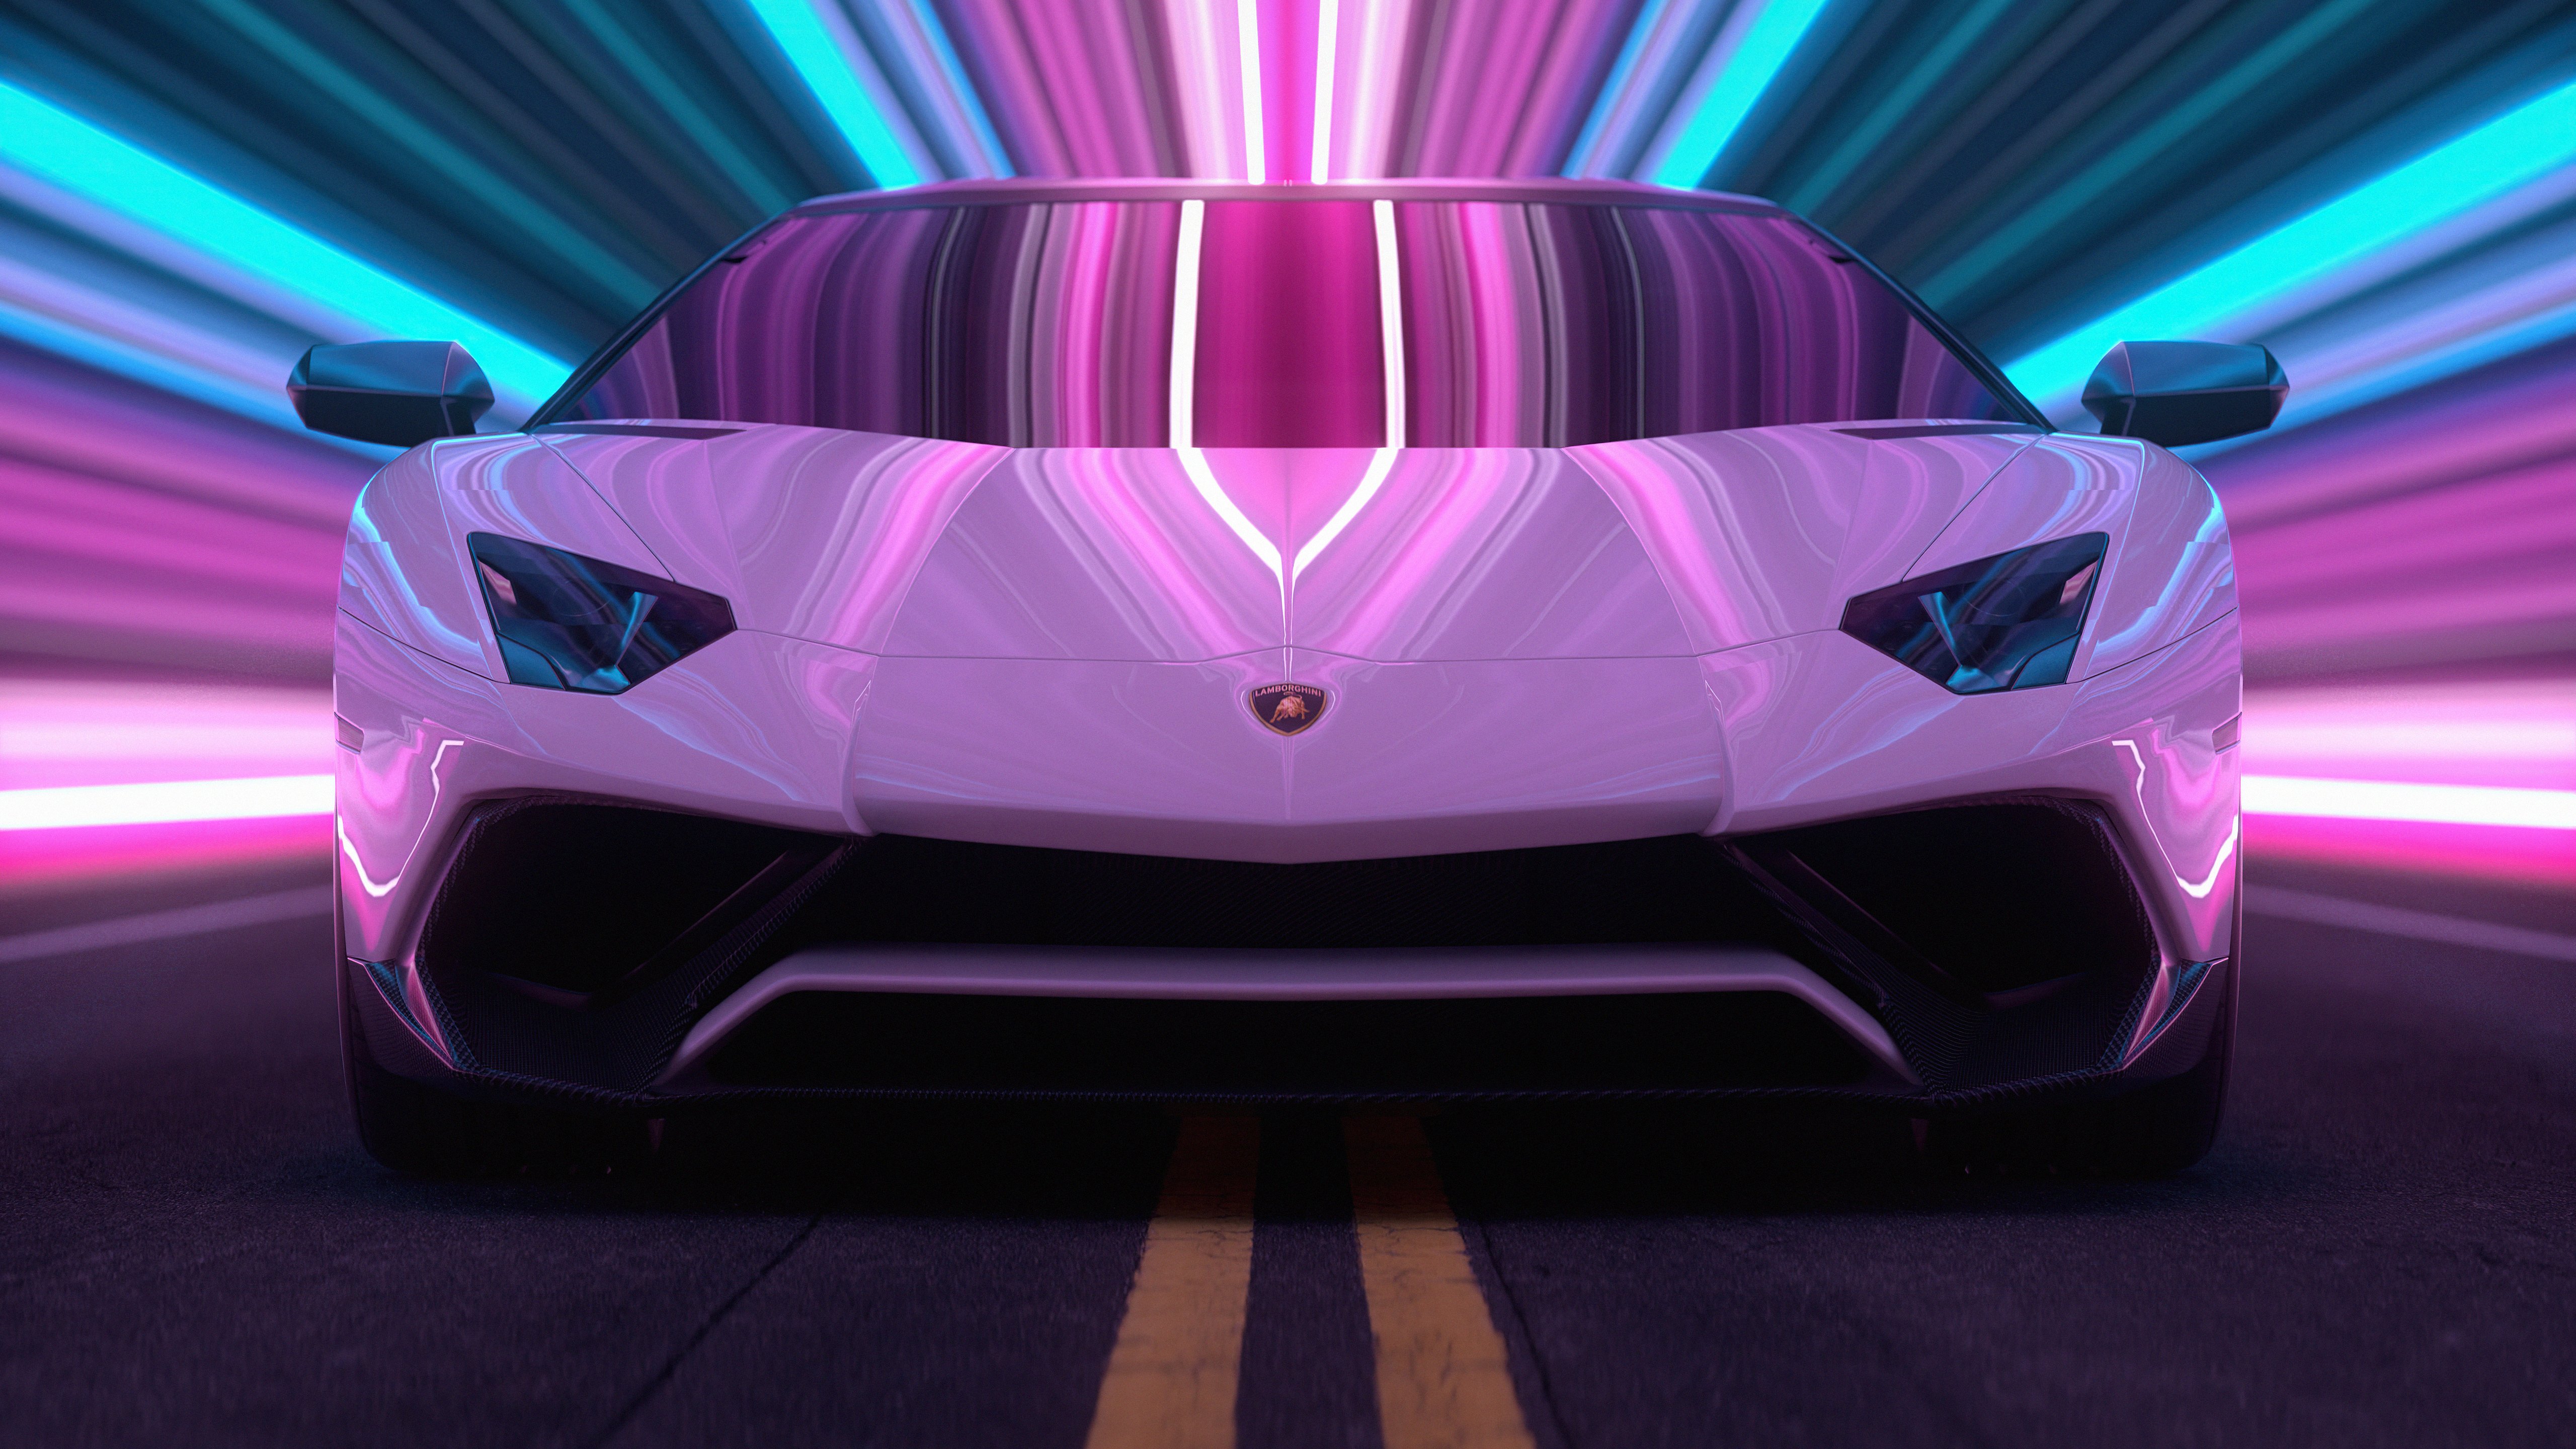 Lamborghini Aventador CGI Fondo de pantalla 5k Ultra HD ID:7229